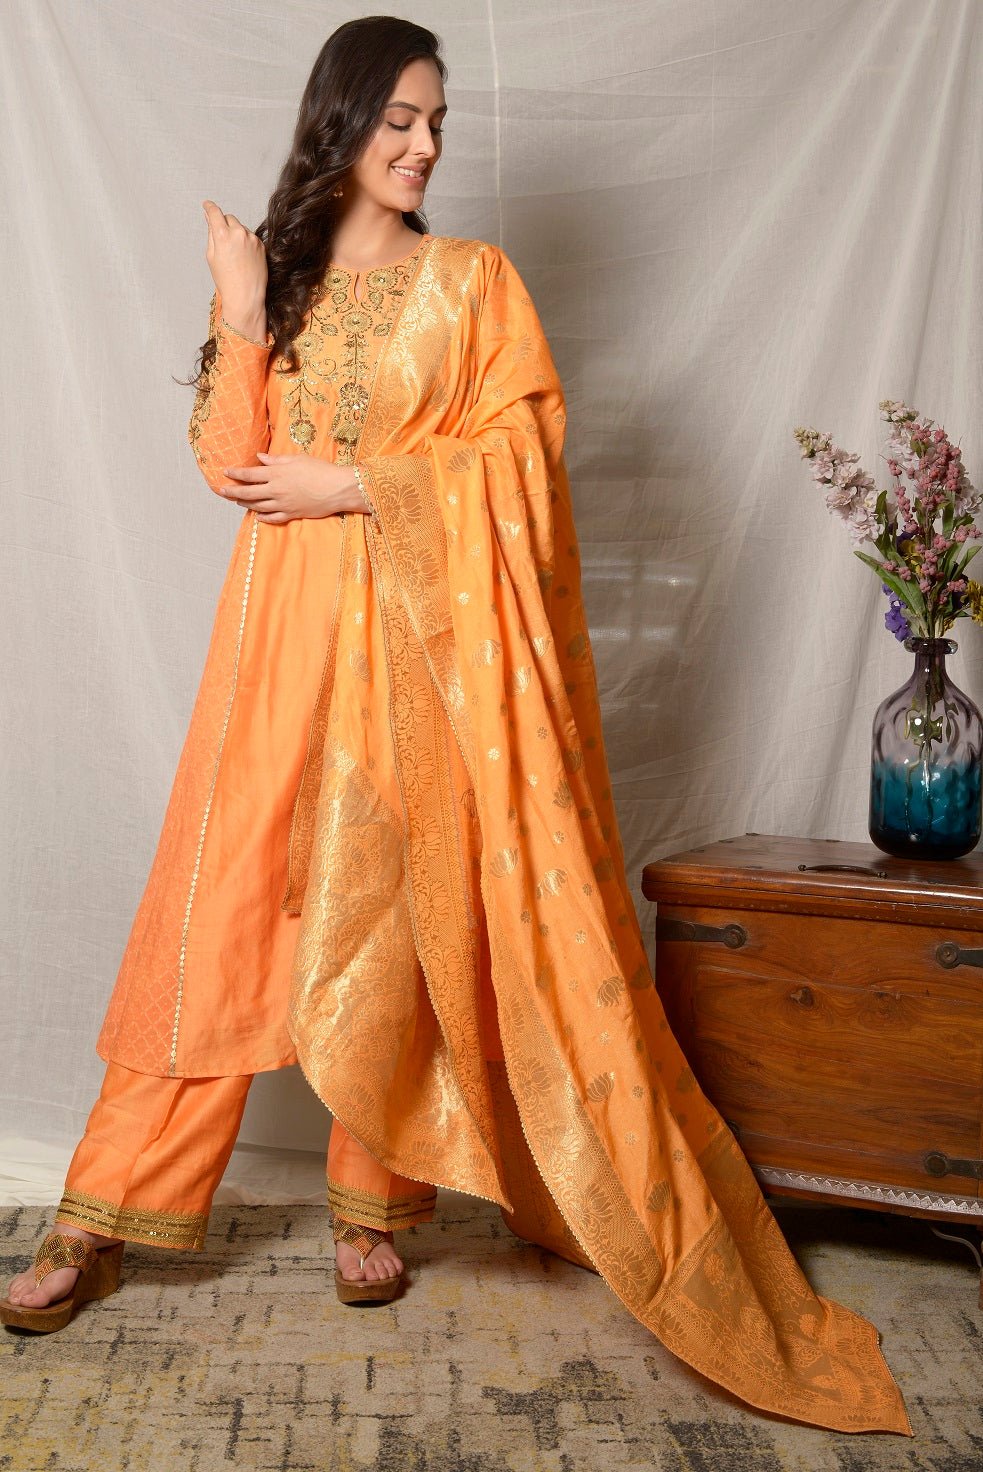 Plain Suit With Contrast Dupatta || Punjabi Suit Colour Combination || Dupatta  suit By Kaur Fashion - YouTube